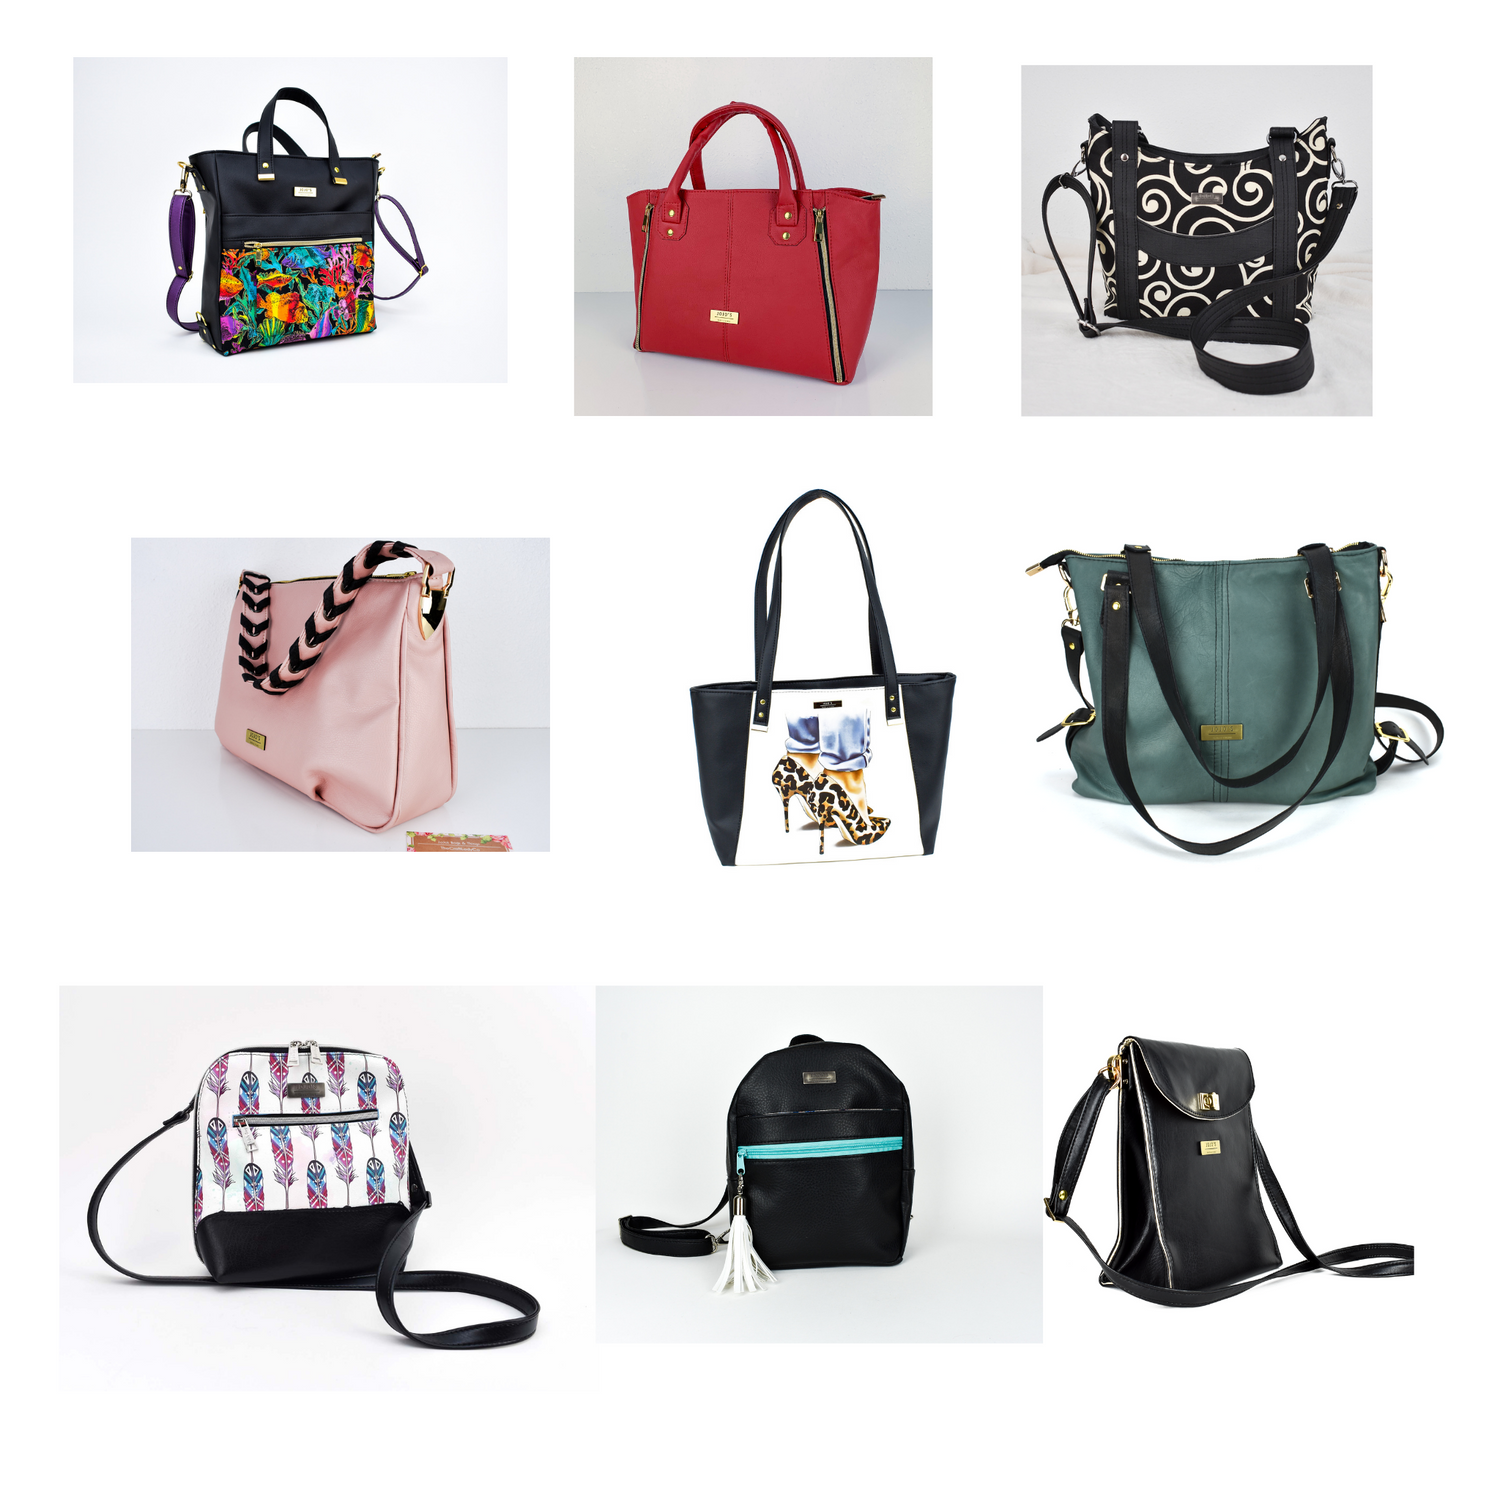 Product Design Categories: Handbag Design | Otis College